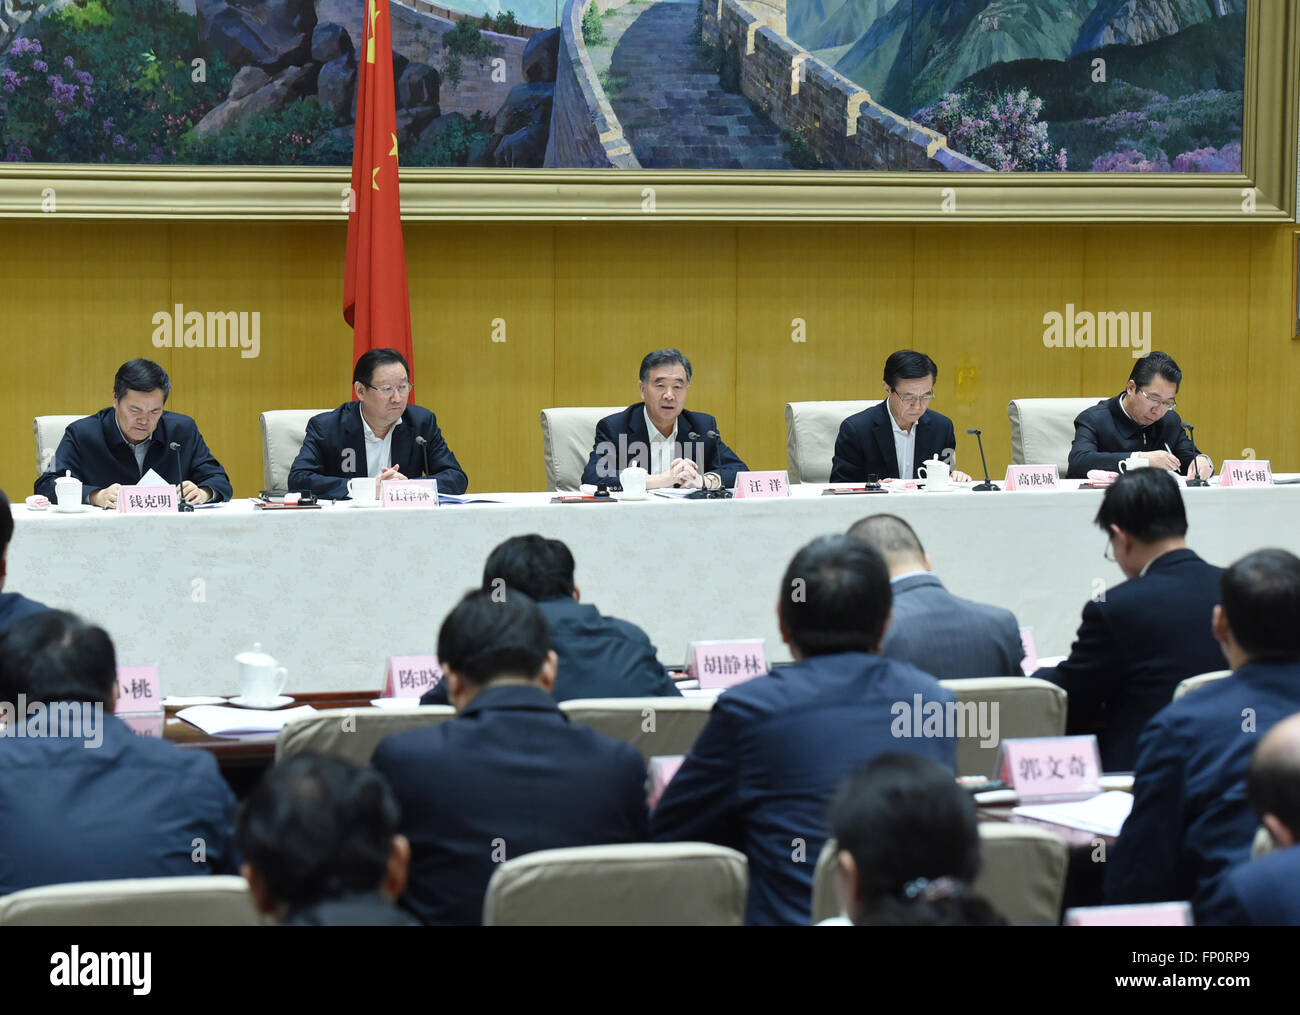 (160317)--Peking, 17. März 2016 (Xinhua)--Chinese Vice Premier Wang Yang (C) spricht während eines Treffens zur Bekämpfung der Verletzung von Rechten des geistigen Eigentums und die Herstellung und Vertrieb von gefälschte und minderwertige Ware in Peking, Hauptstadt von China, 17. März 2016. (Xinhua/Wang Ye) (Zkr) Stockfoto